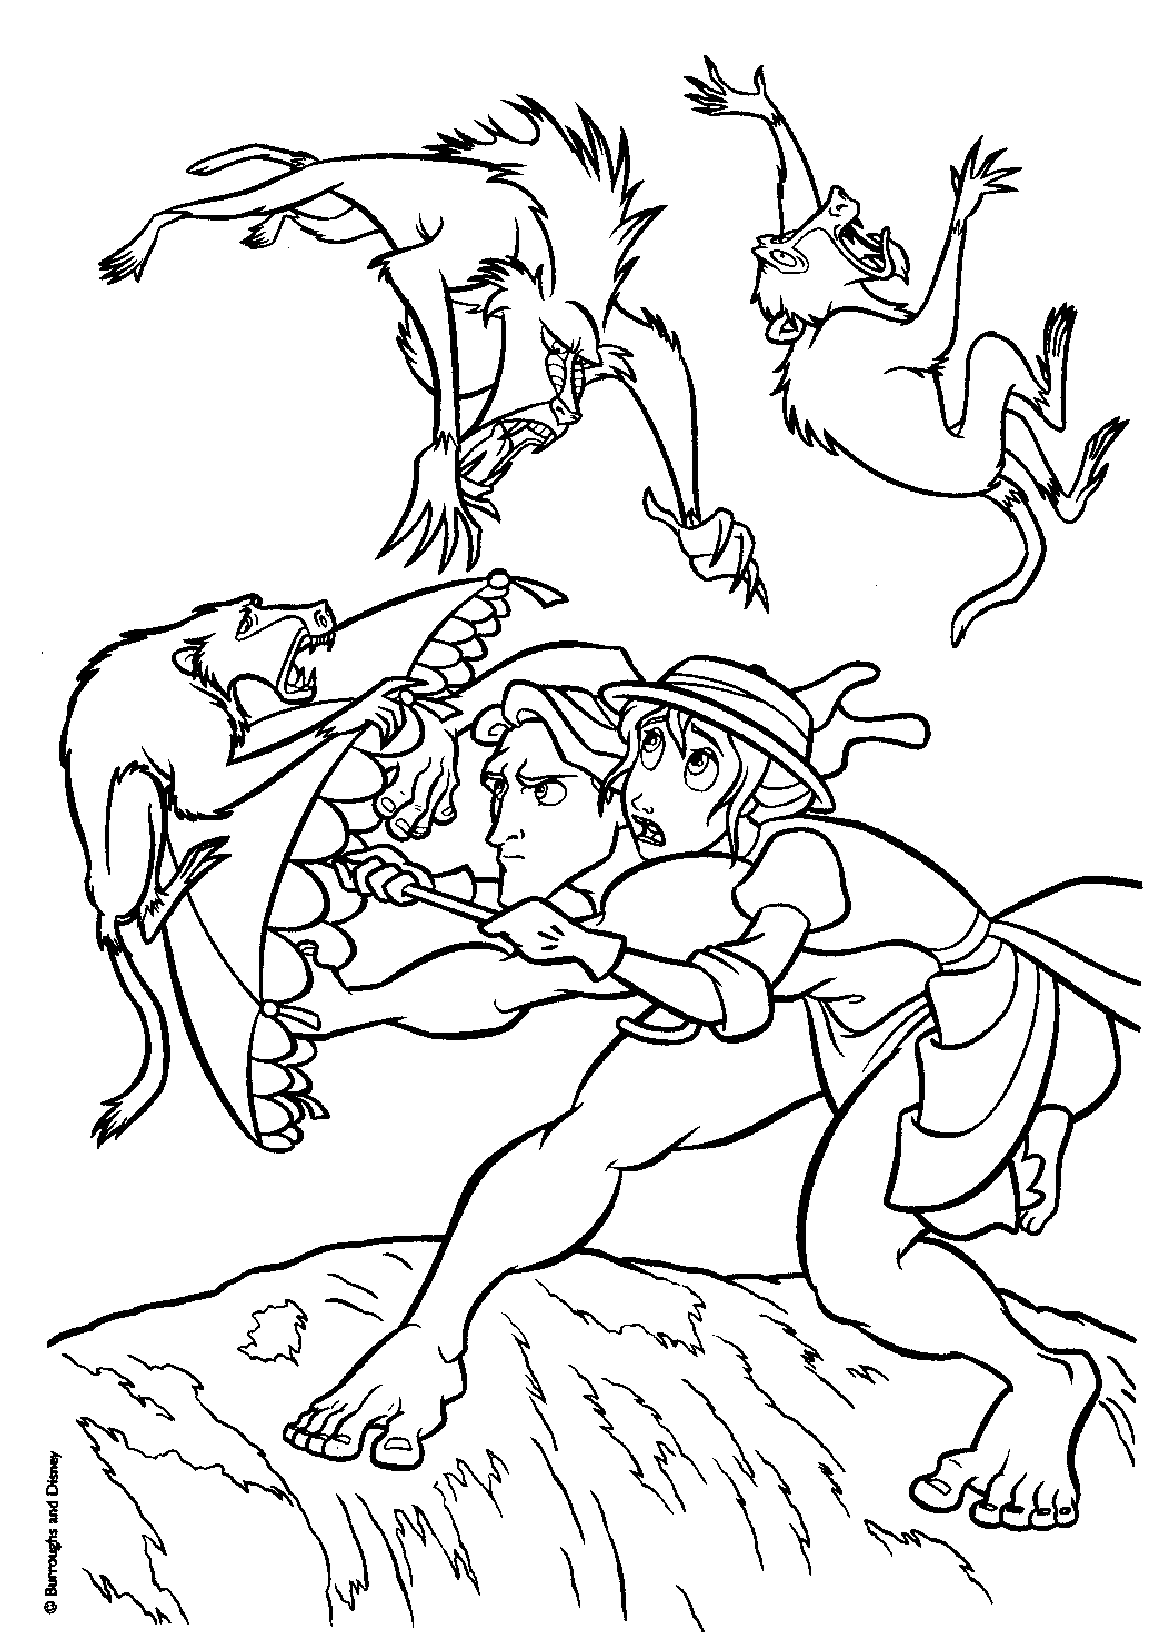 Tarzan protège sa chère Jane